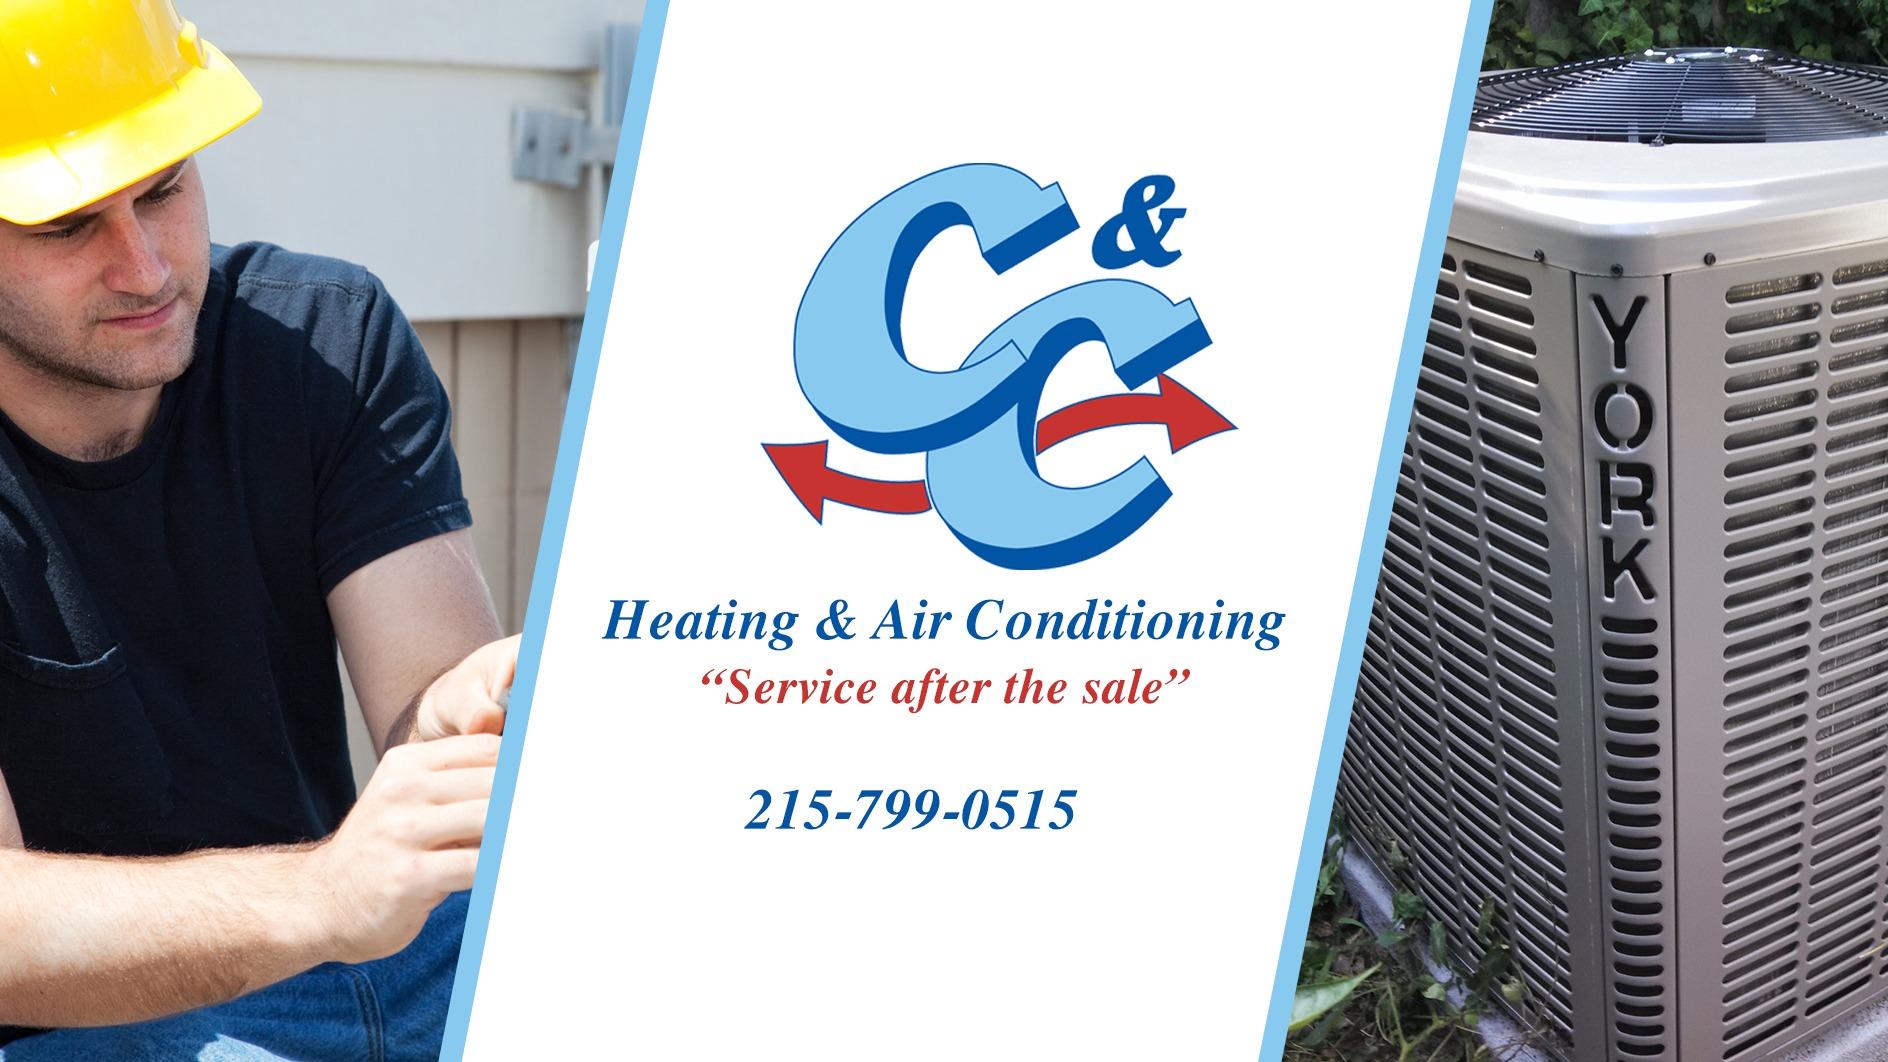 C&C Heating & Air Conditioning